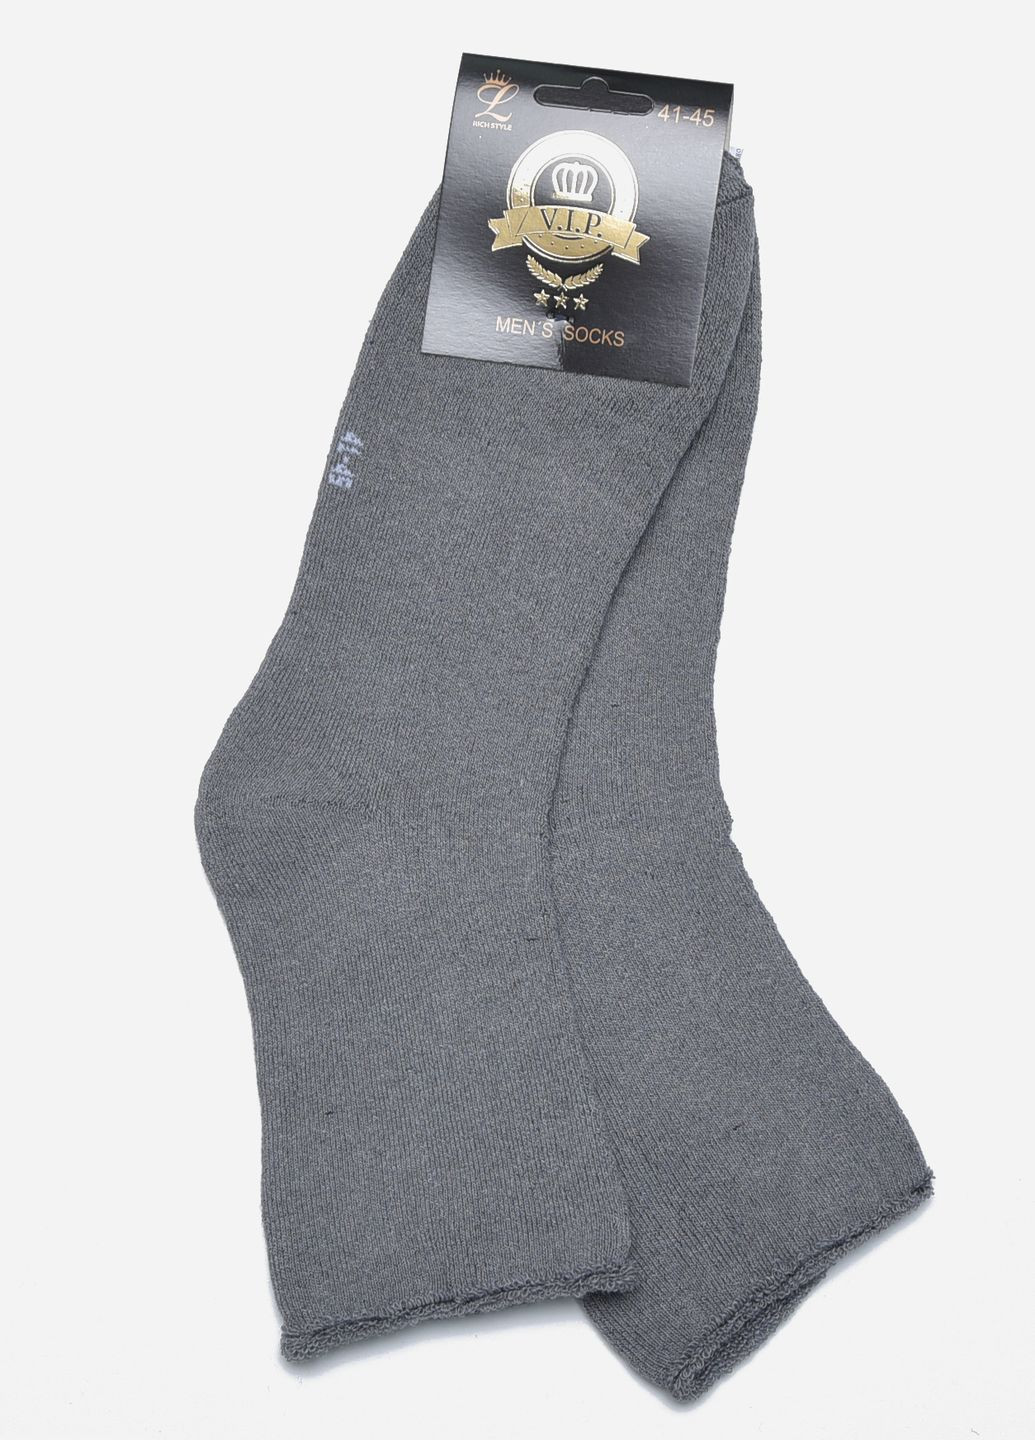 Носки мужские медицинские махра серого цвета без резинки размер 41-45 Let's Shop (272976069)